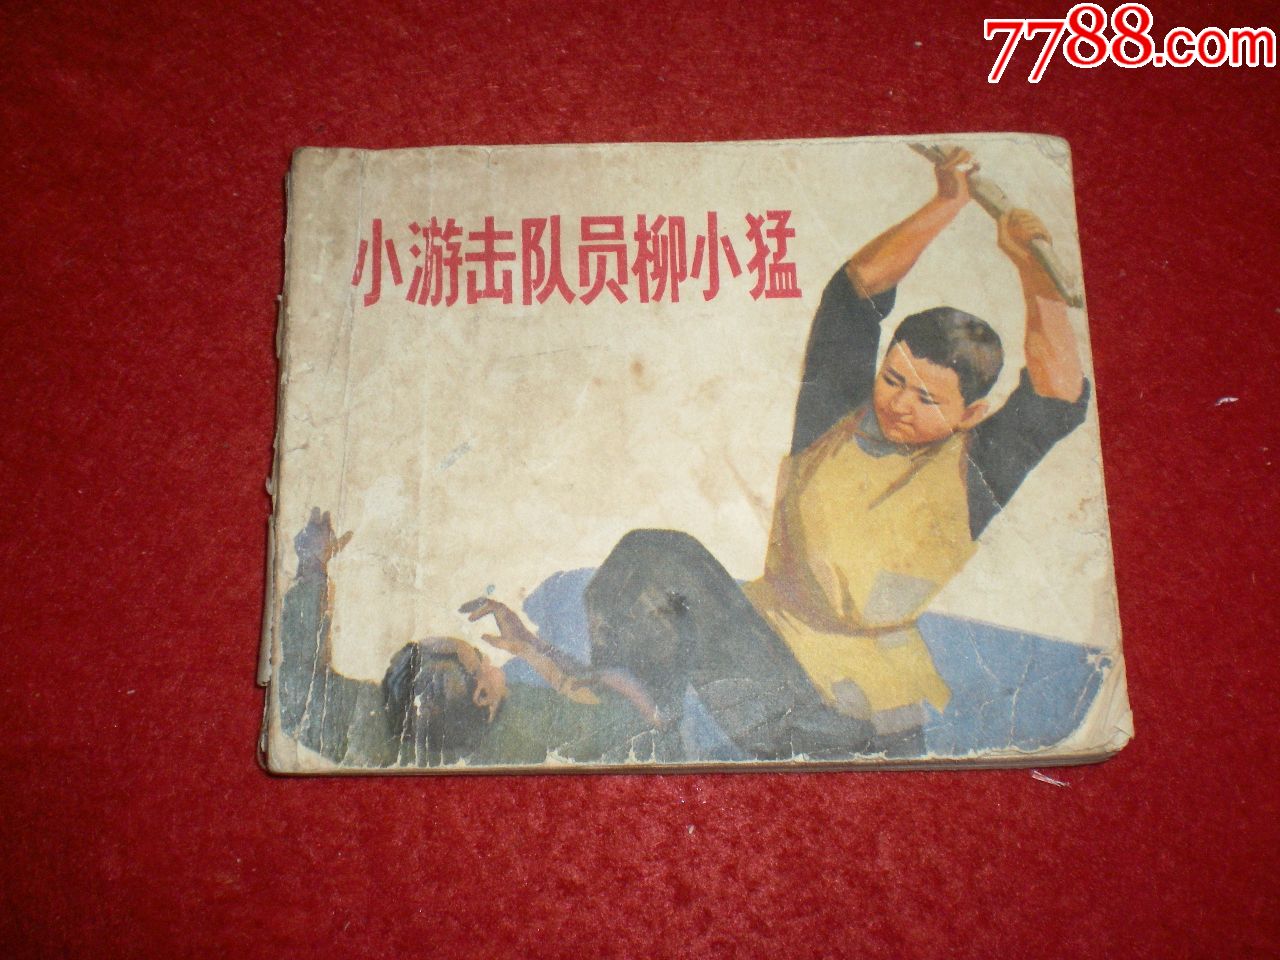 老版连环画《小游击队员柳小猛》韩伍,天津人民美术出版社.